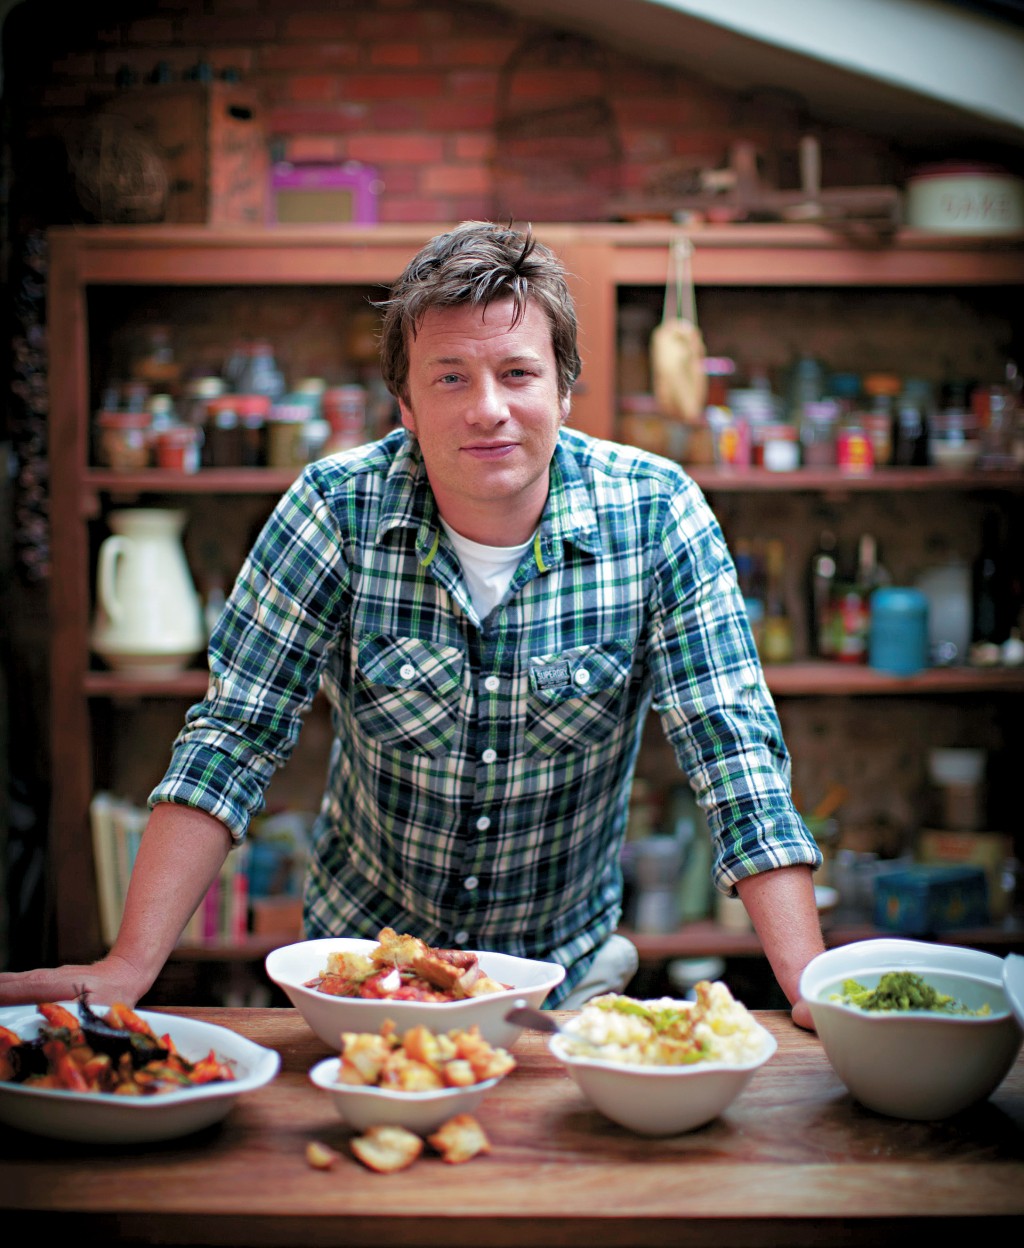 網民回應｜網民稱之前Jamie Oliver嘗試挑戰呢個制度，可惜當年每餐只有兩鎊多啲，根本唔夠預算，結果都係失敗咗。